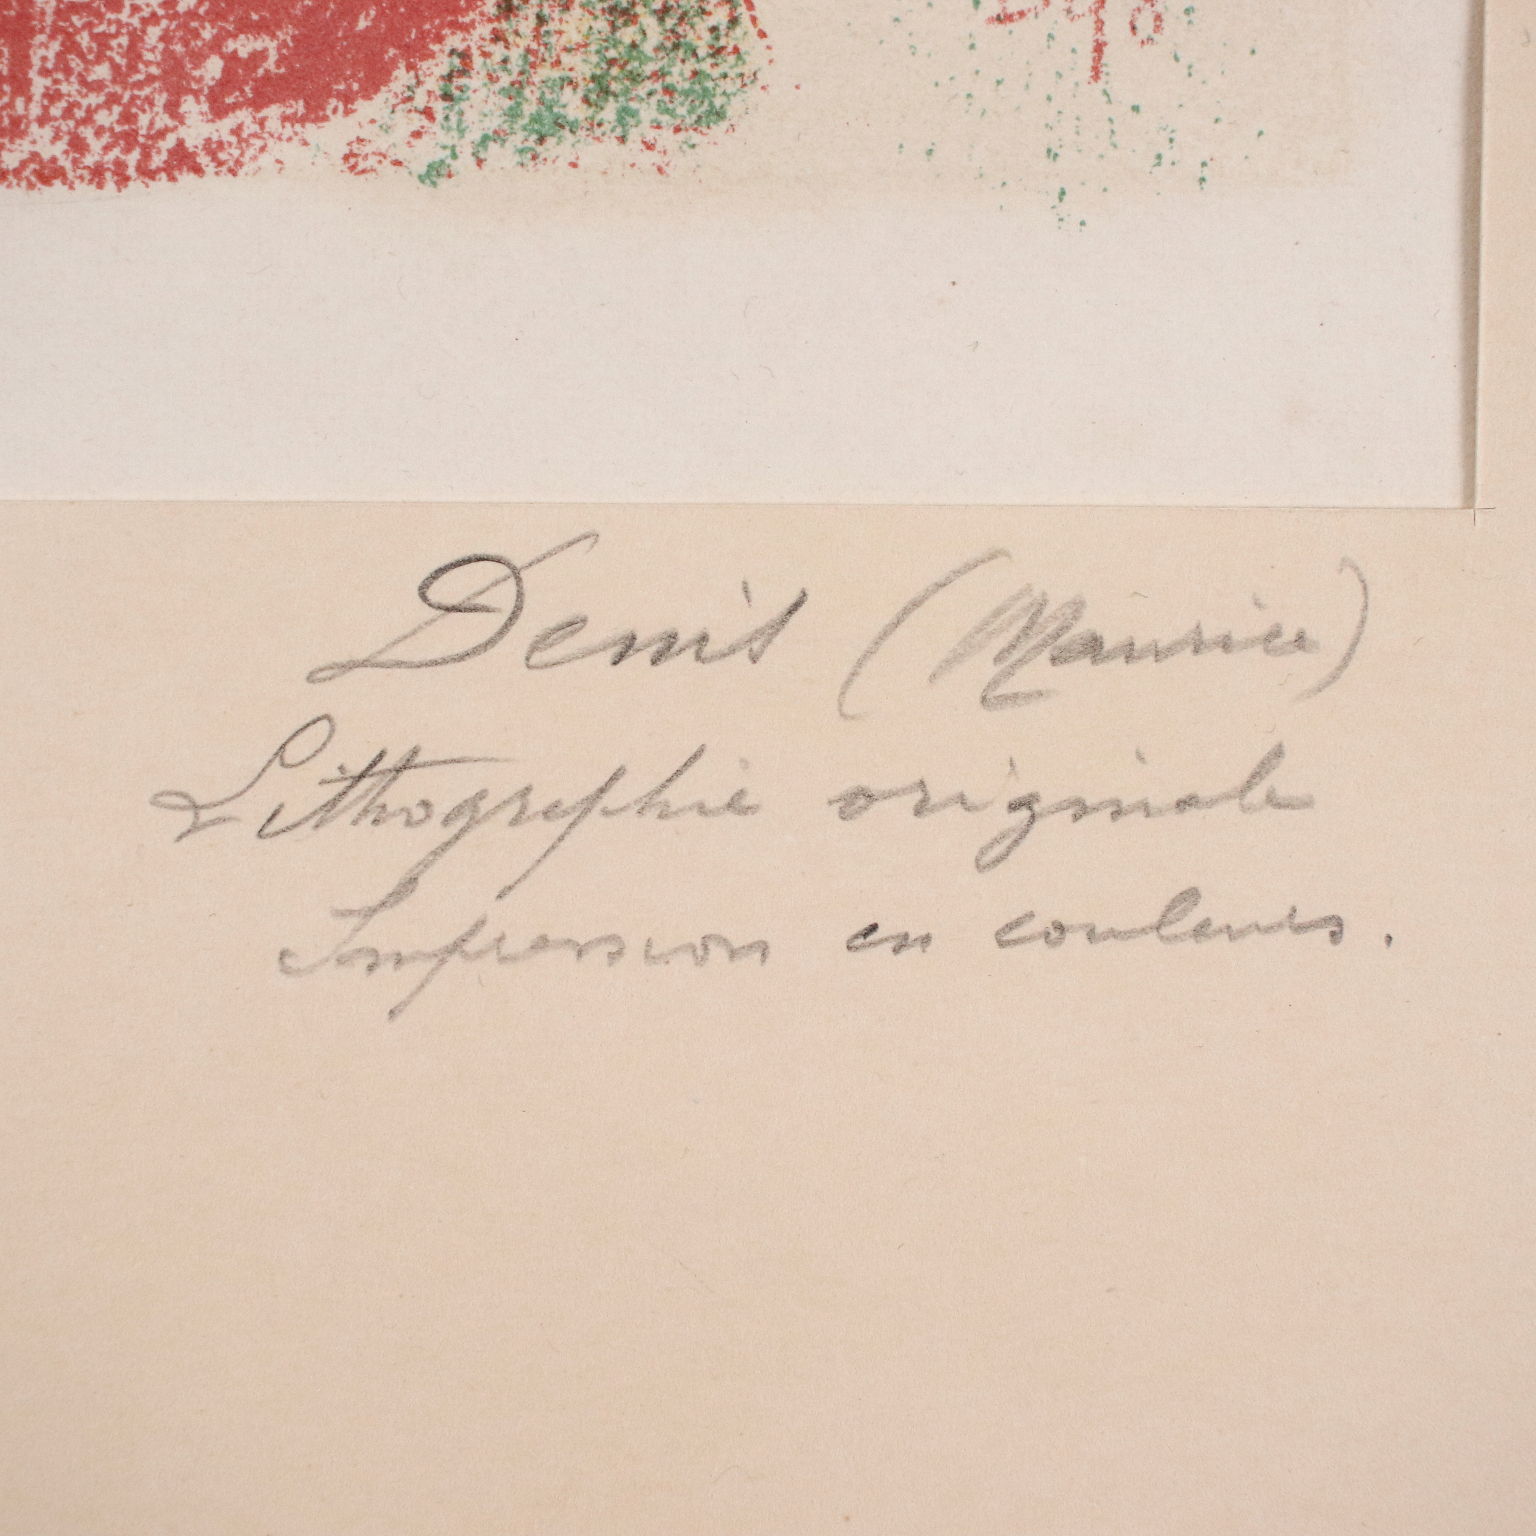 Moderne Farblithografie auf Velinpapier M. Denis Frankreich 1911